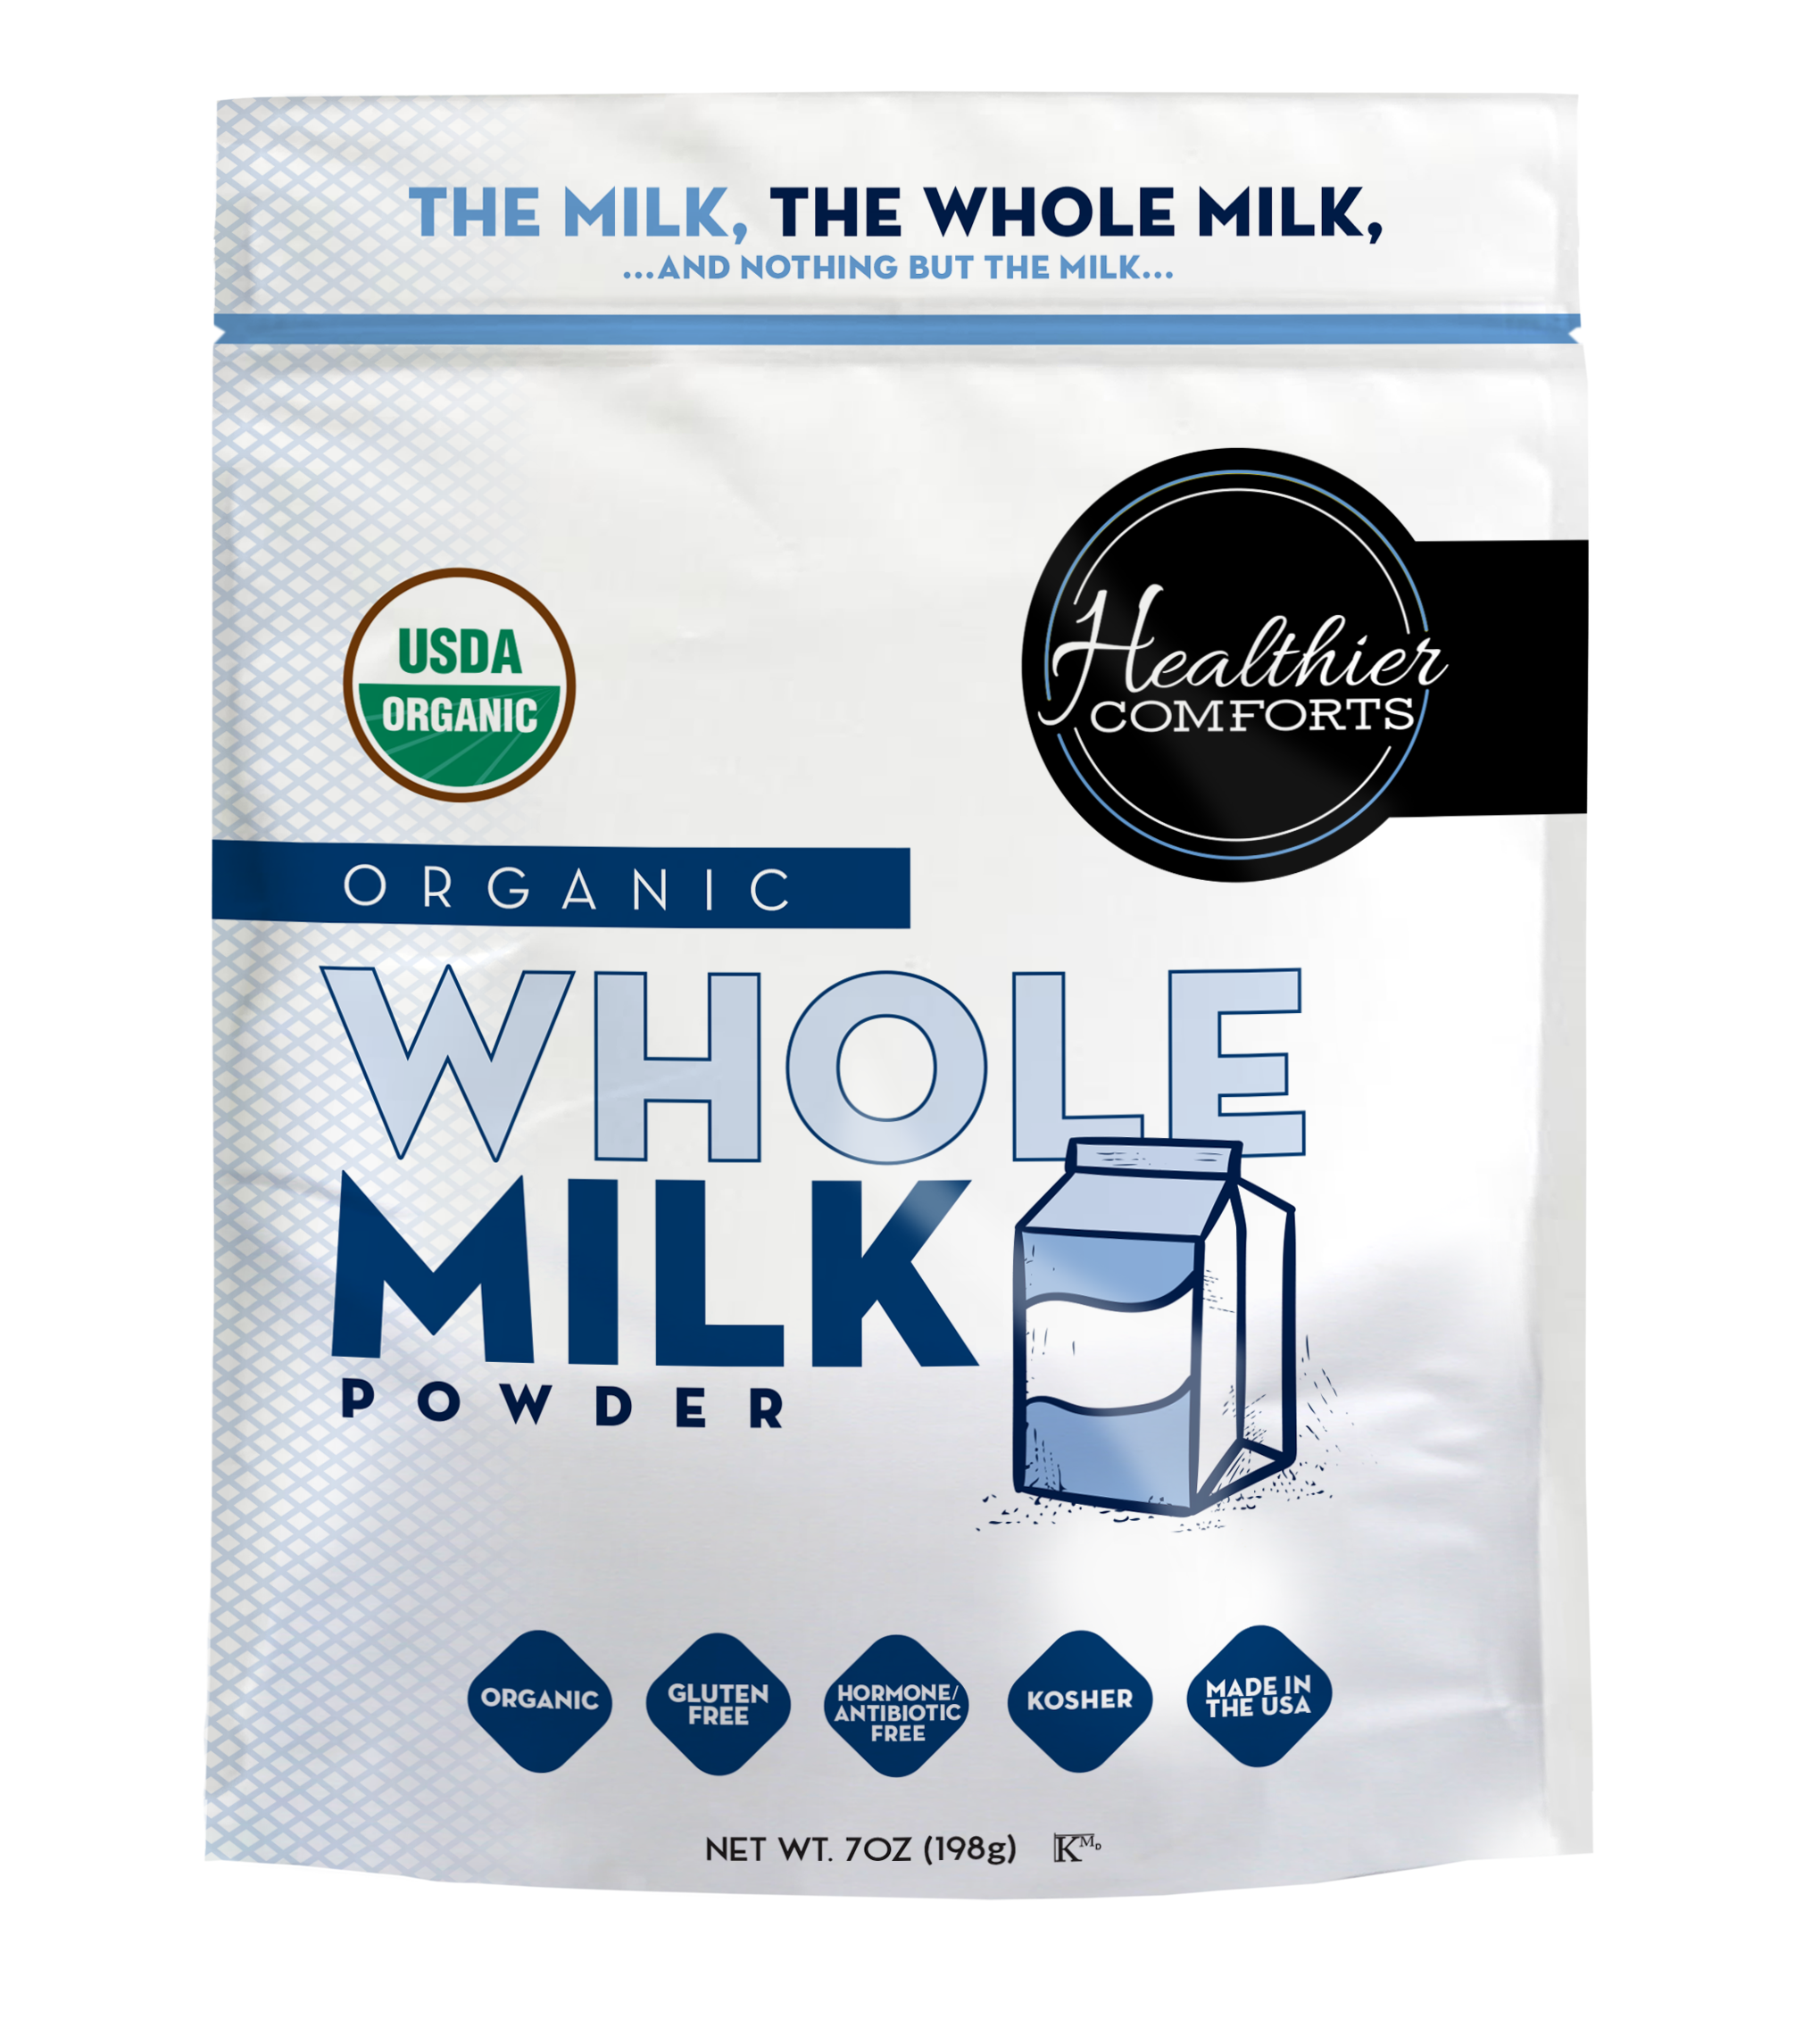 Novel powdered milk method yields better frothing agent